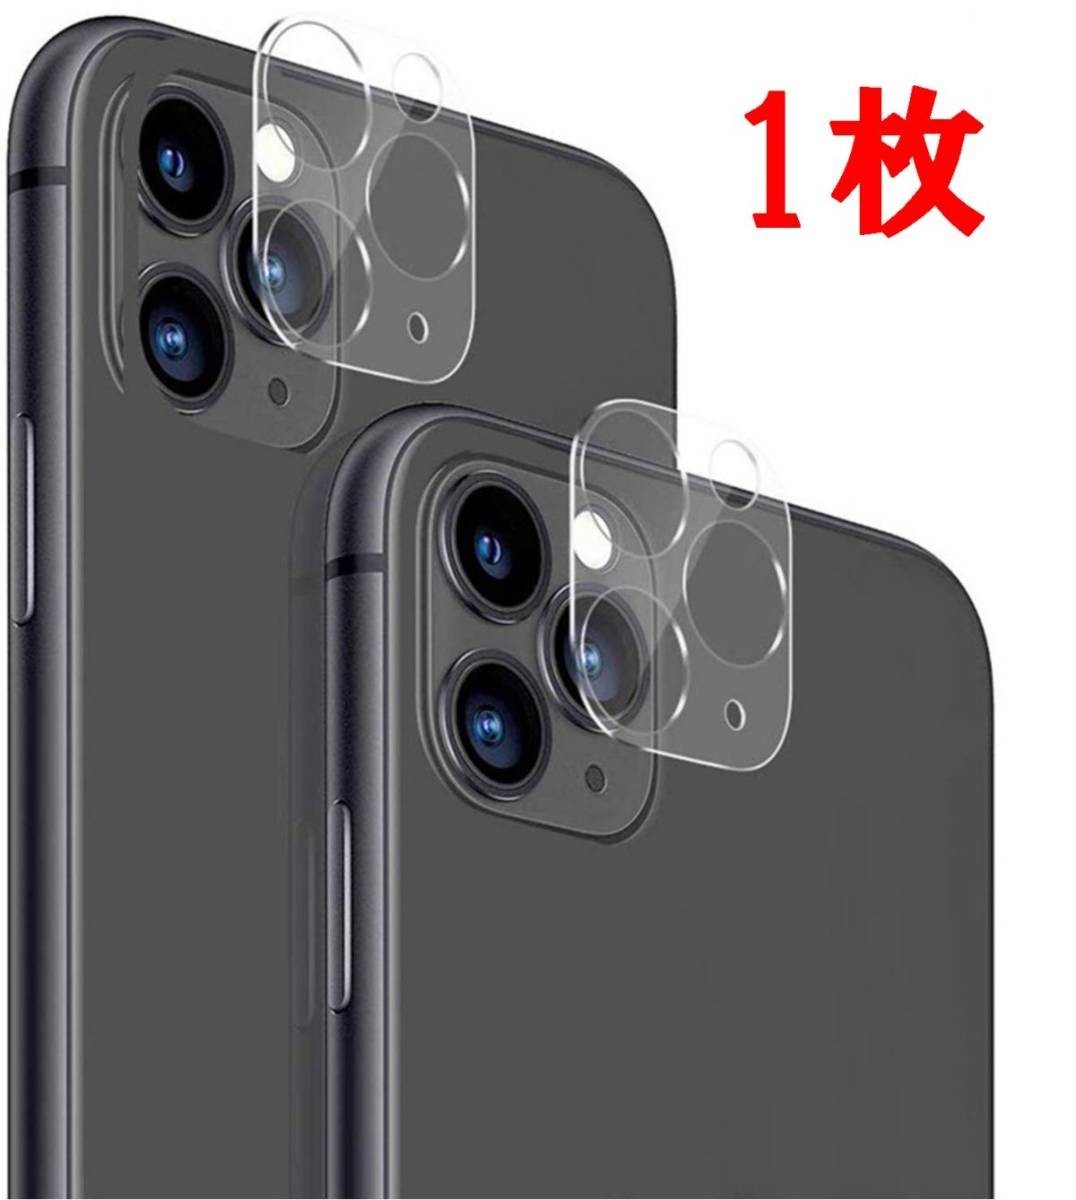 送料120円 iPhone 11 Pro iPhone 11 Pro Max 『透明カメラフィルム』3D全面保護フィルム レンズ保護リング 耐衝撃9H【5.8/6.5inchi】